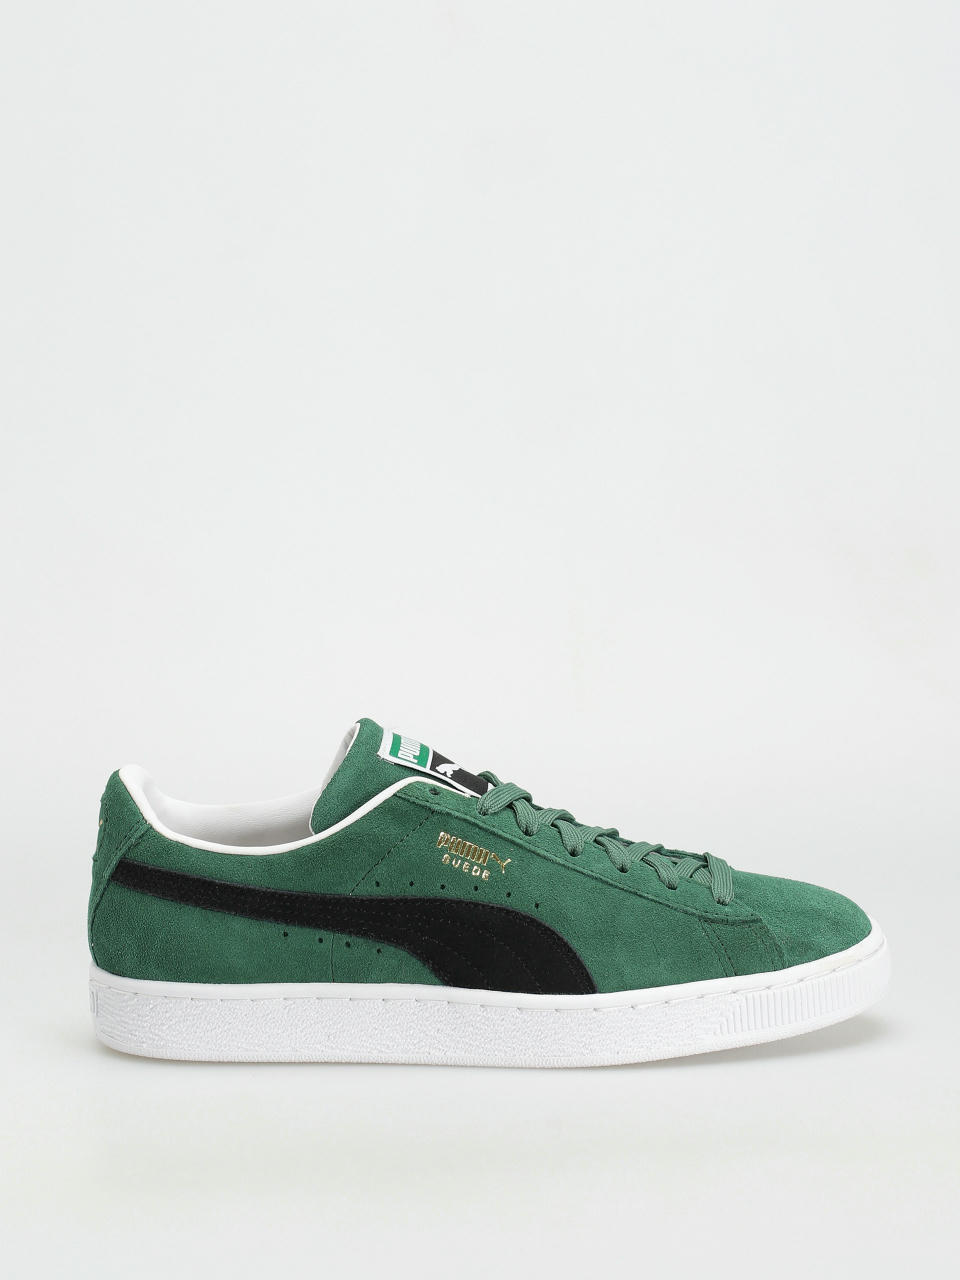 Puma Suede Classic XXI Shoes (green)